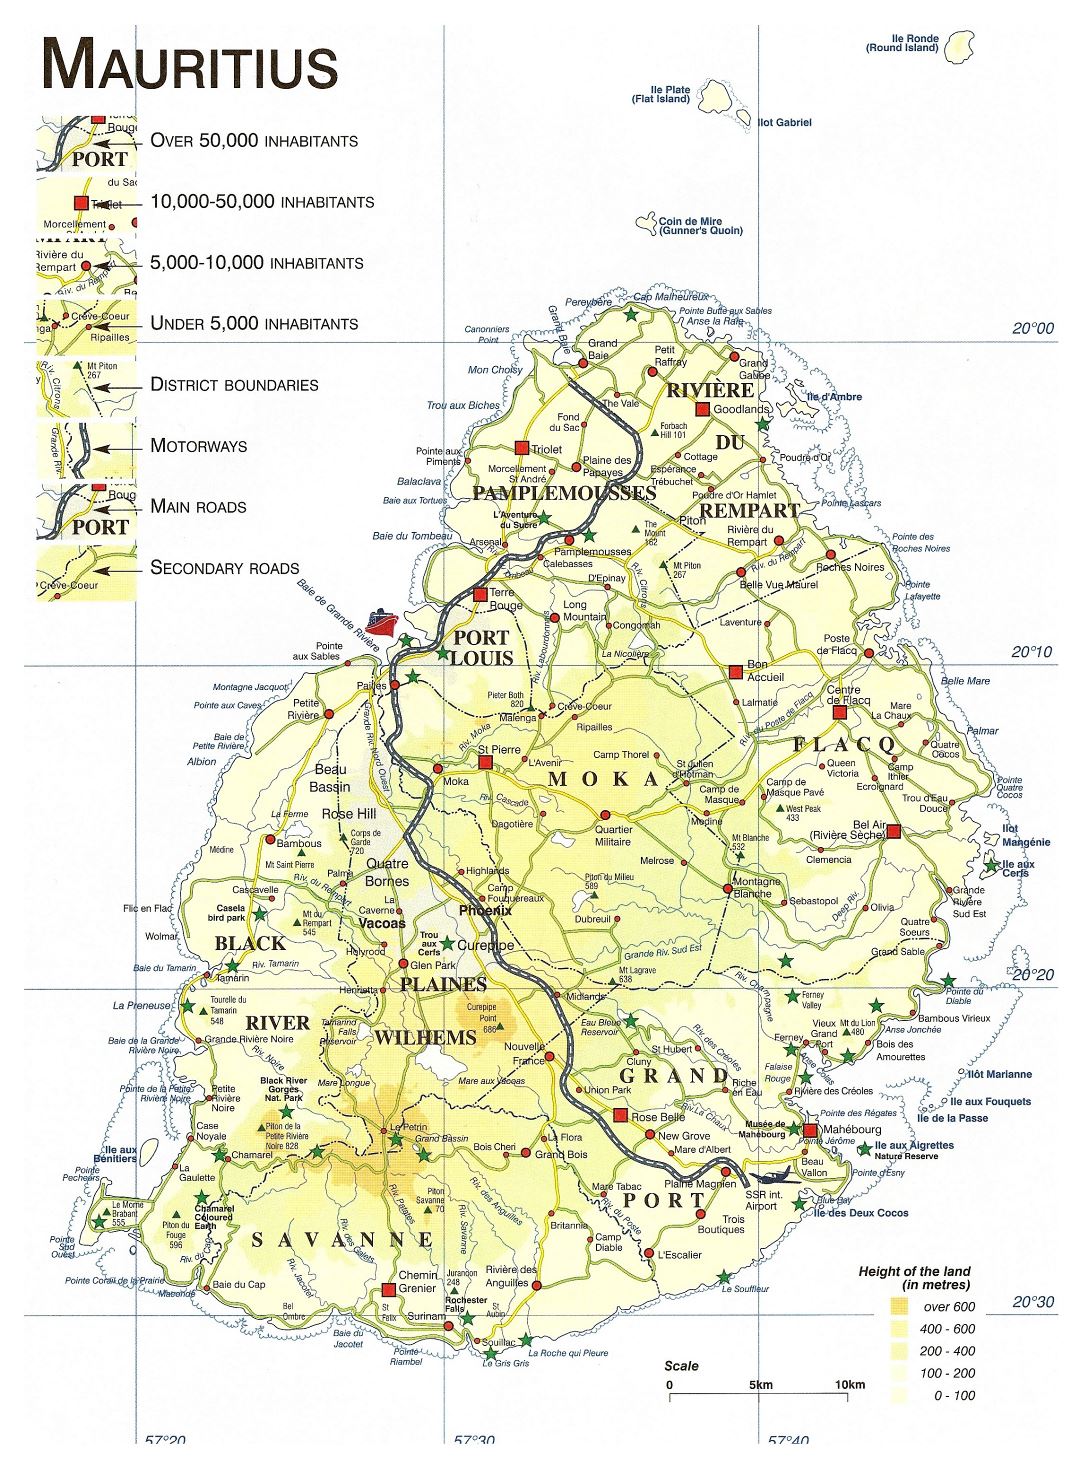 Большая детальная карта высот Маврикия с дорогами, городами и другими пометками